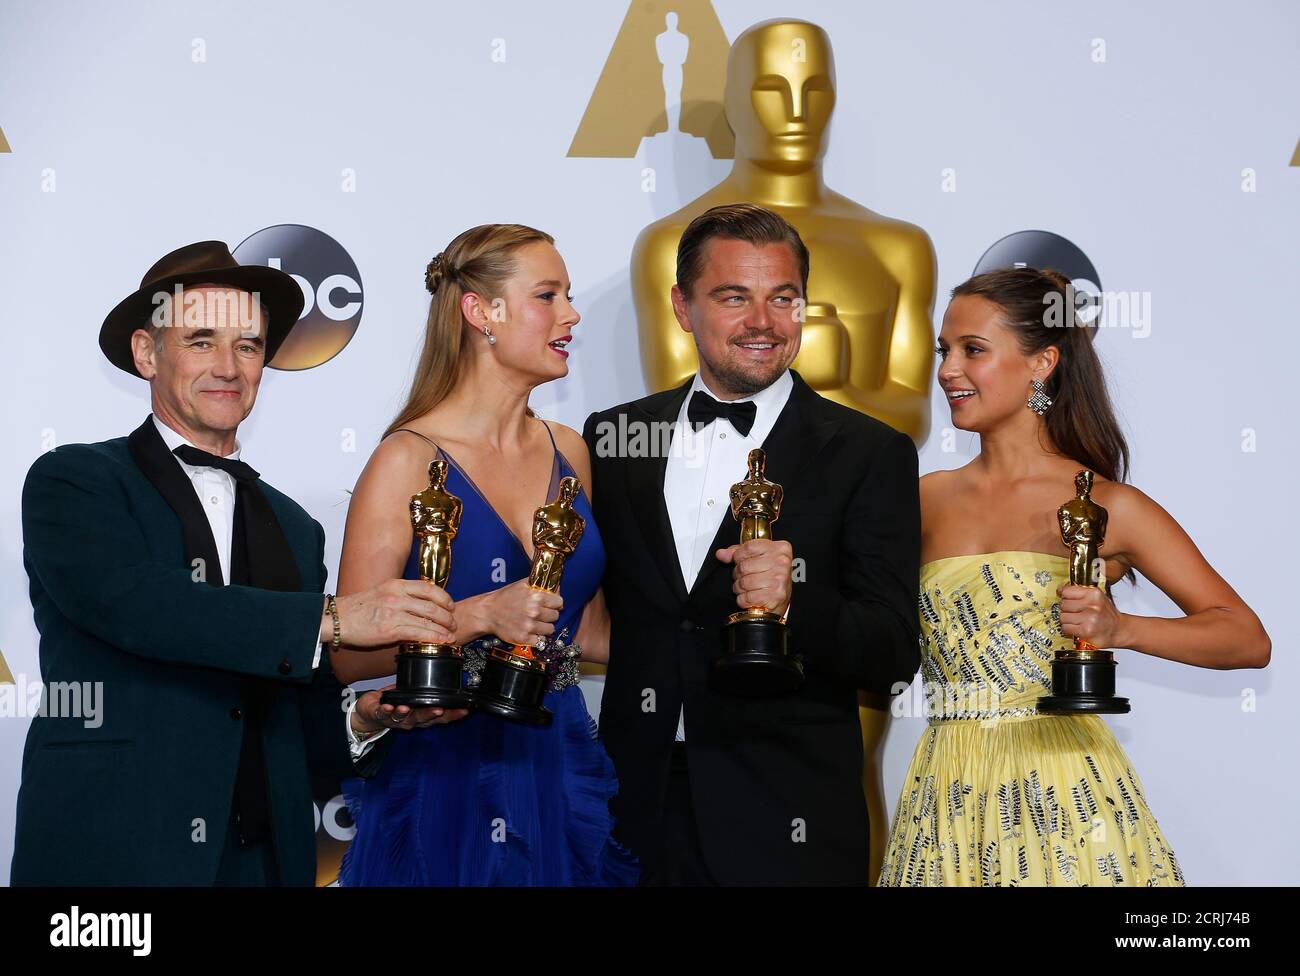 Le meilleur acteur de soutien Mark Rylance (L), la meilleure actrice Brie Larson, le meilleur acteur Leonardo DiCaprio et la meilleure actrice de soutien Alicia Vikander (R) posent avec leurs Oscars dans les coulisses du 88e Academy Awards à Hollywood, Californie le 28 février 2016. REUTERS/Mike Blake Banque D'Images